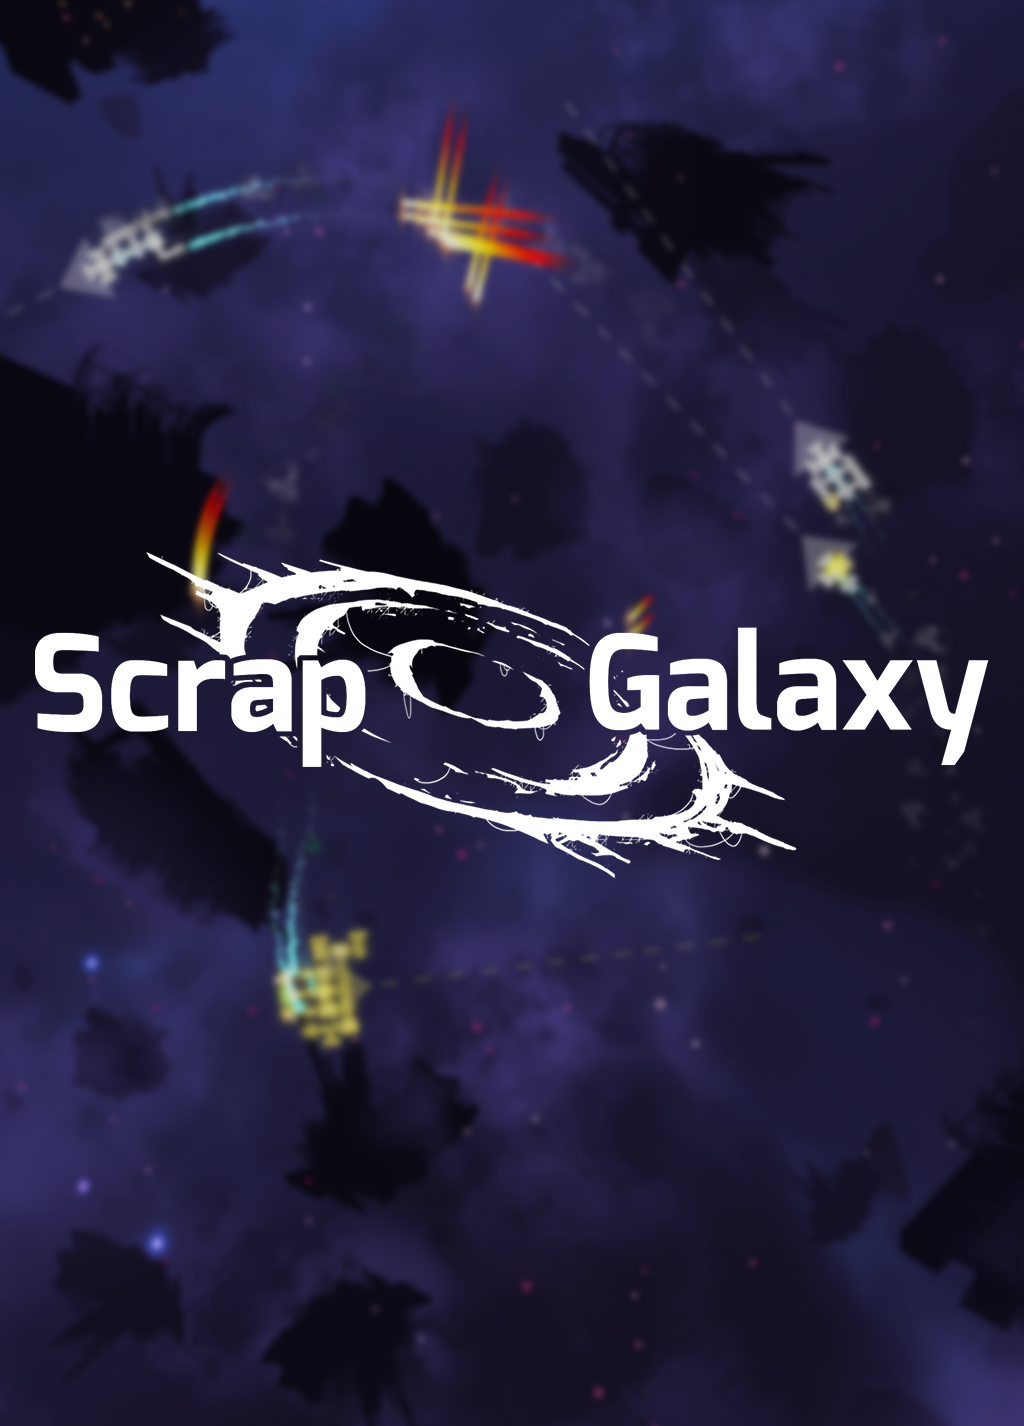 Image of Scrap Galaxy